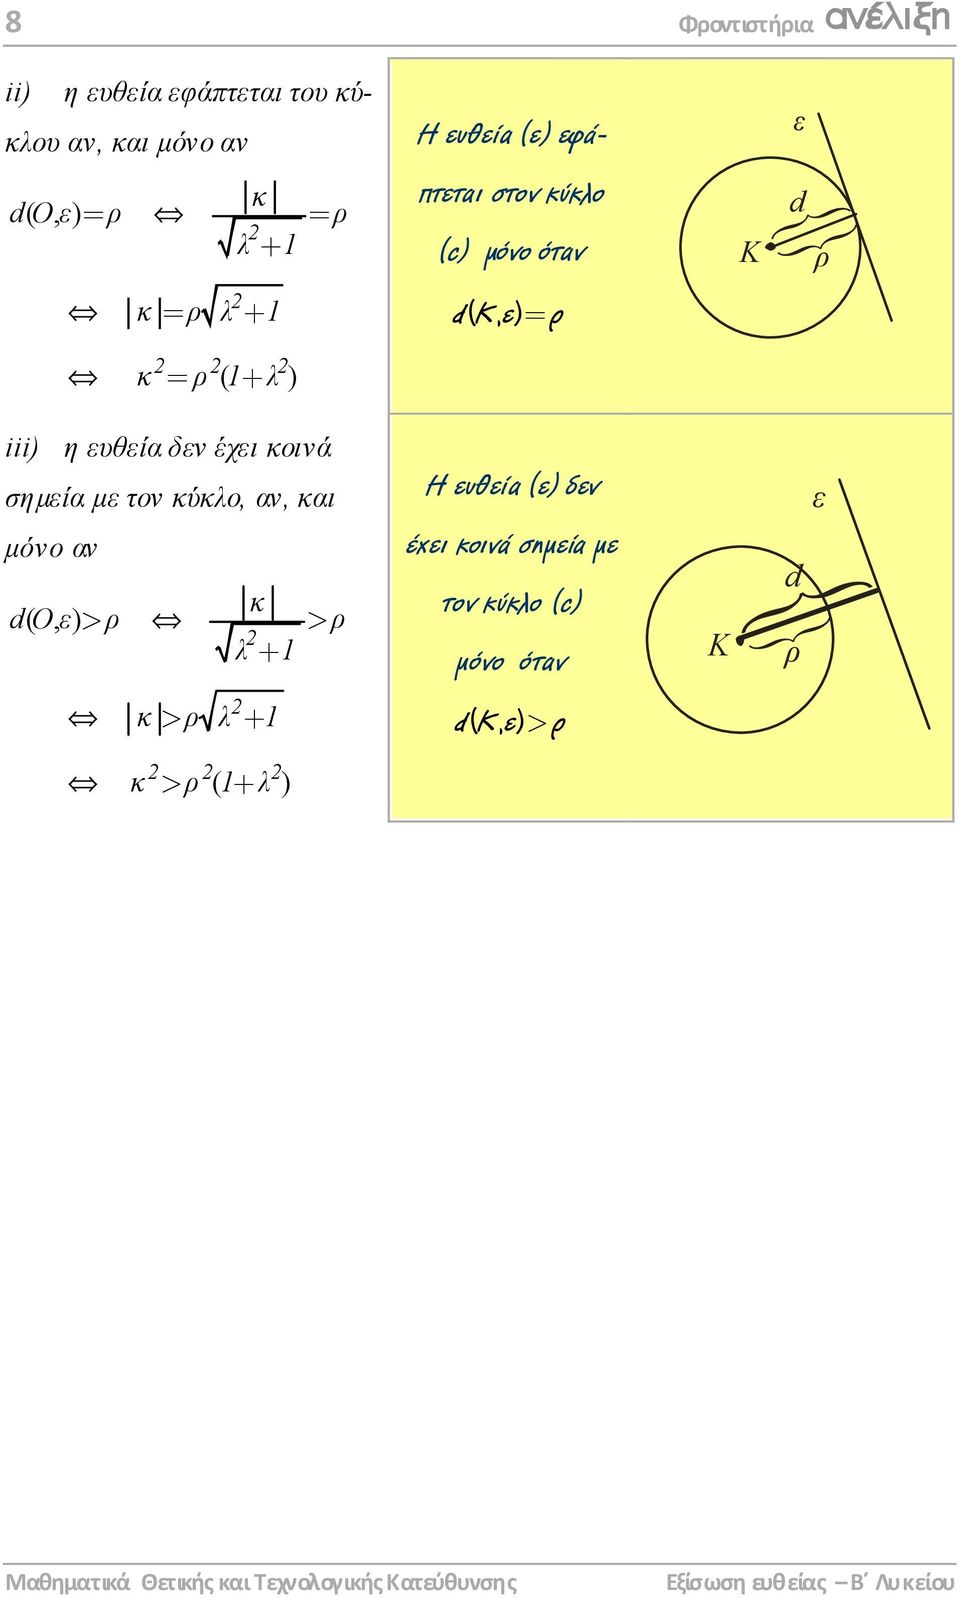 κ > ρ λ + κ > ρ ( + λ ) Η ευθεία (ε) εφάπτεται στον κύκλο (c) µόνο όταν dkε (, ) = ρ Η ευθεία (ε)